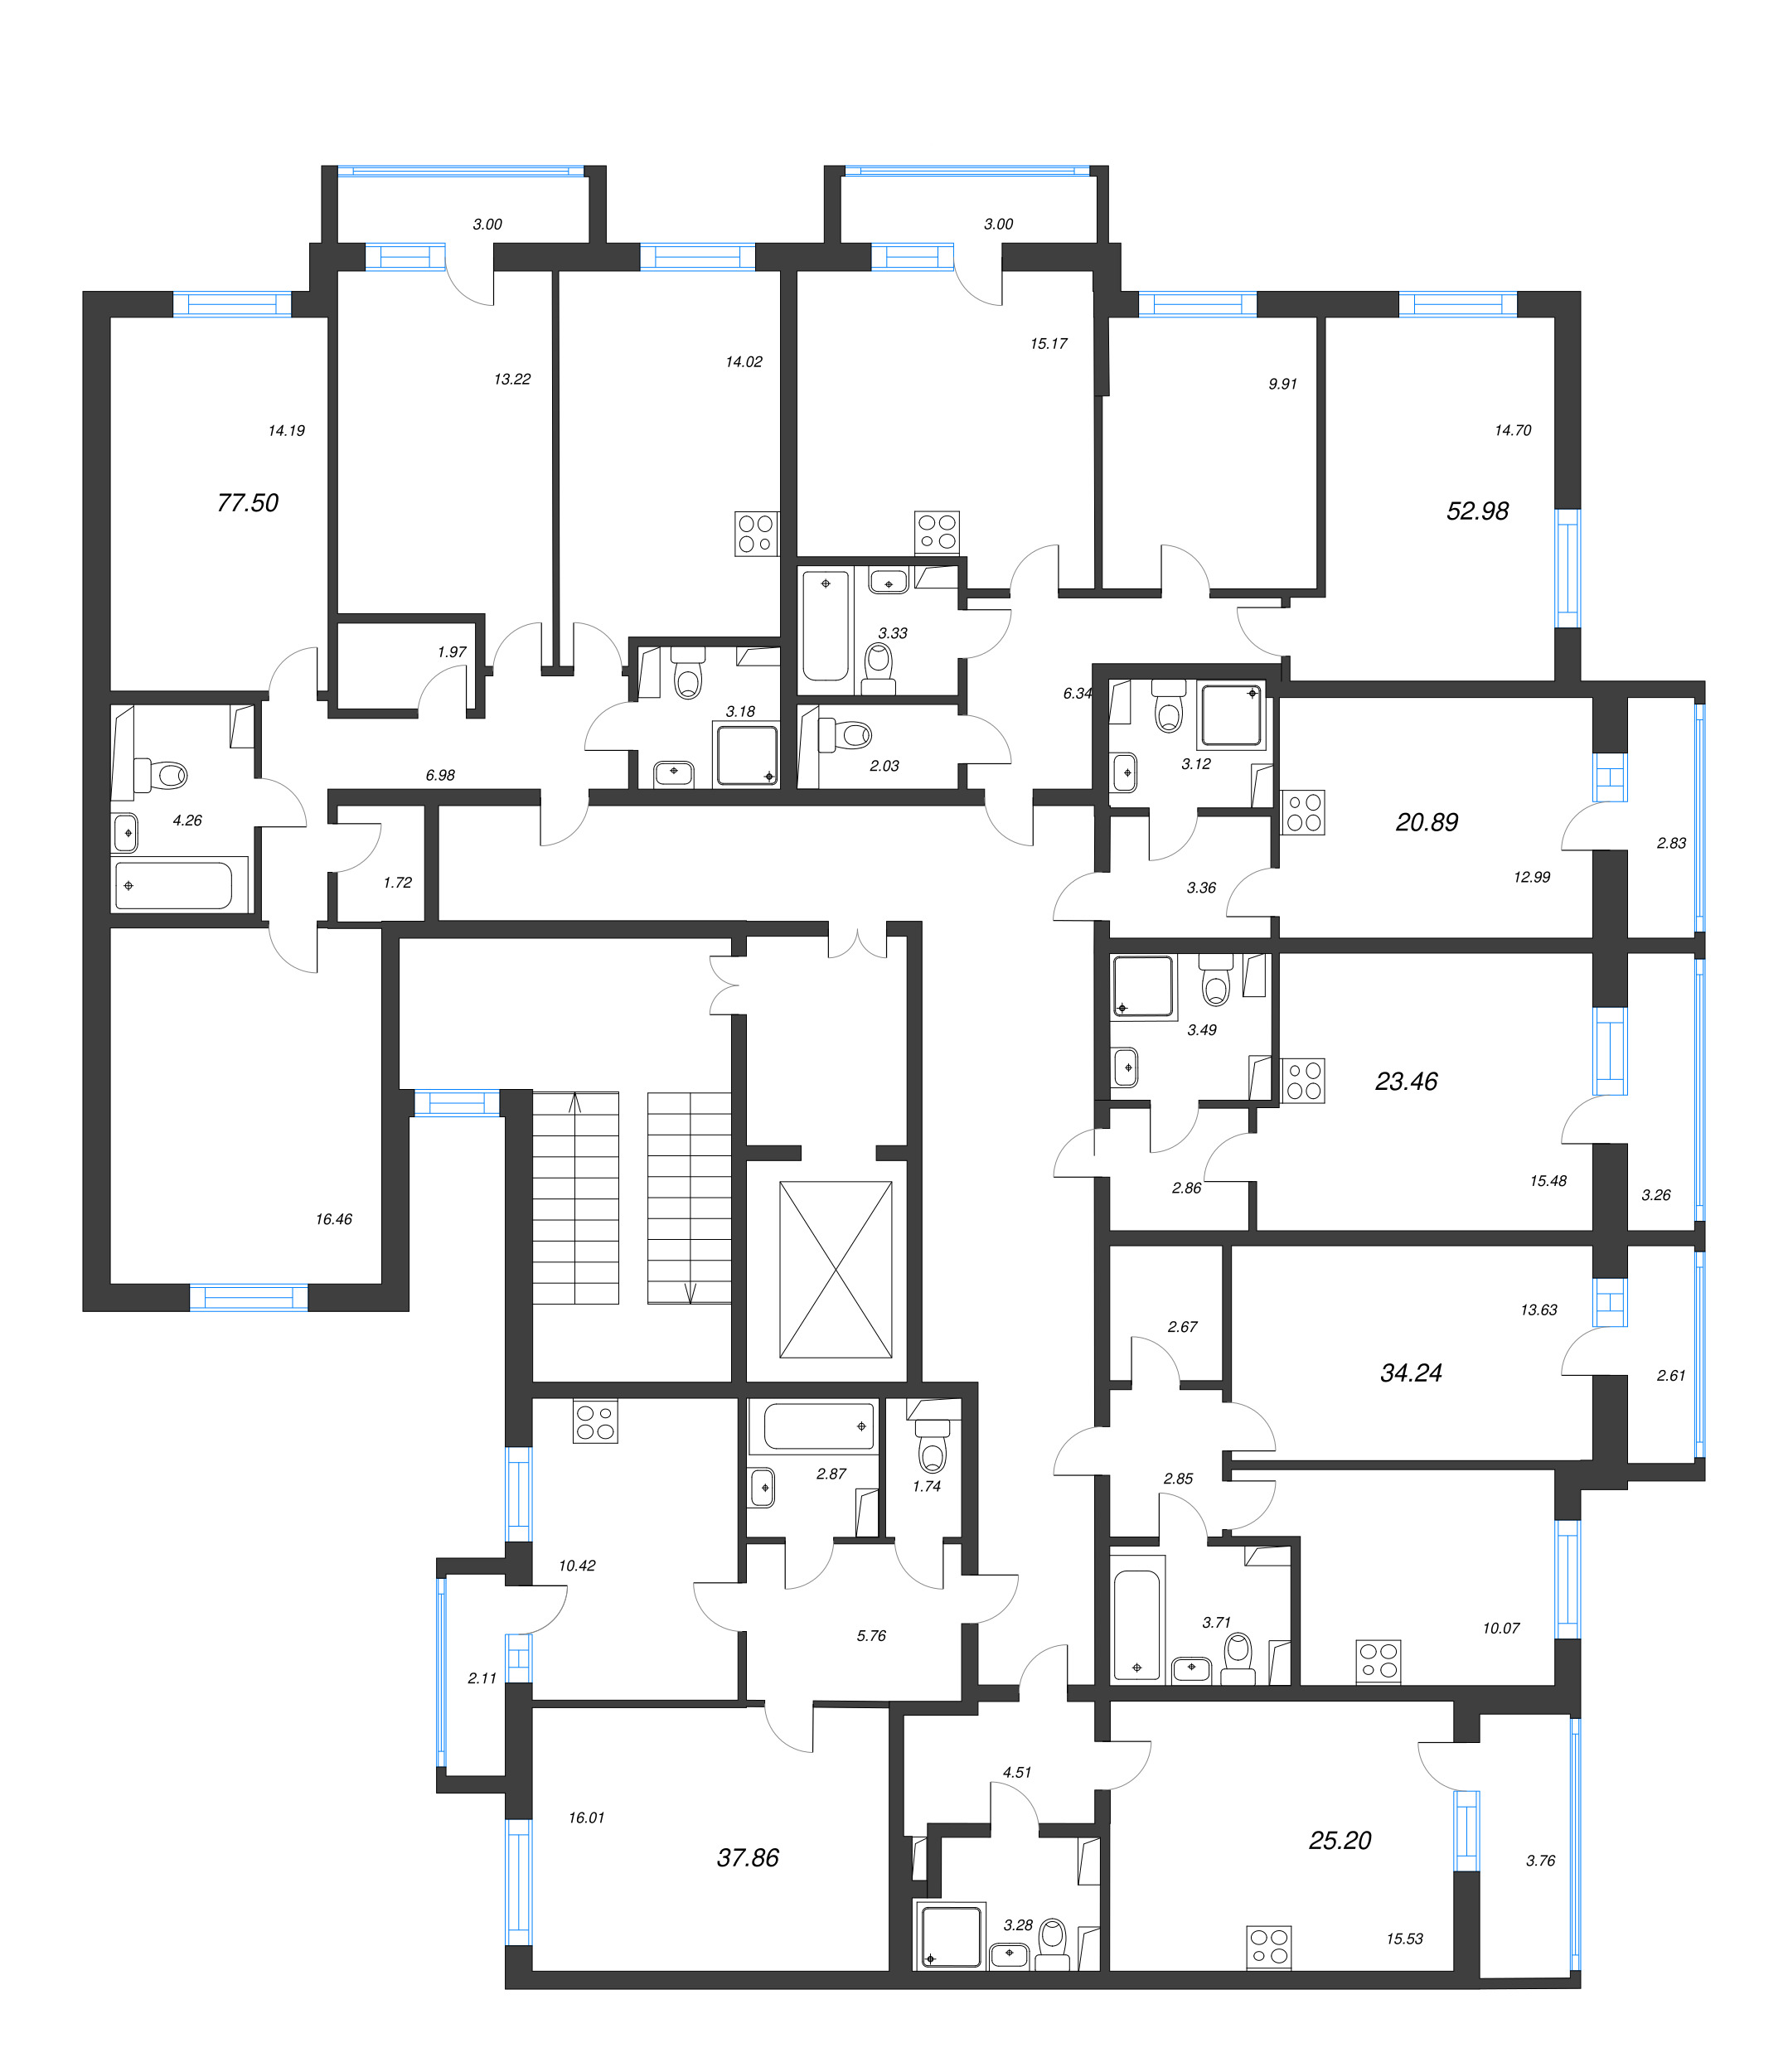 Квартира-студия, 20.89 м² в ЖК "Кинопарк" - планировка этажа